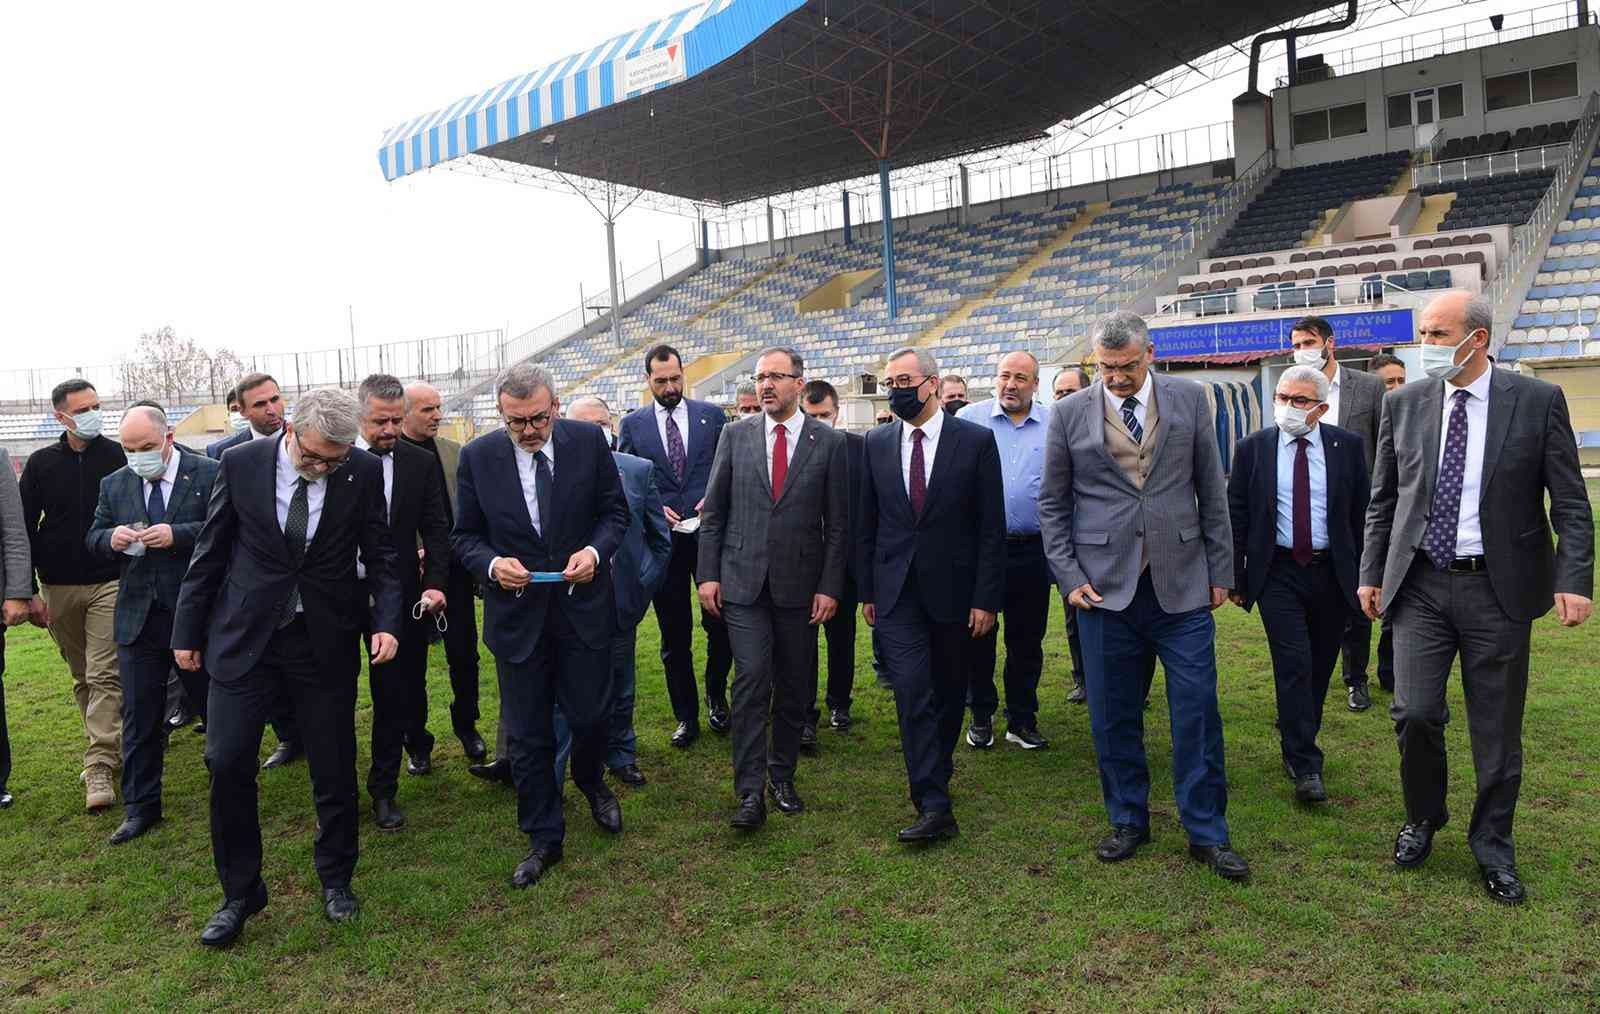 Bakan Kasapoğlu’ndan Kahramanmaraş’a stadyum müjdesi #kahramanmaras